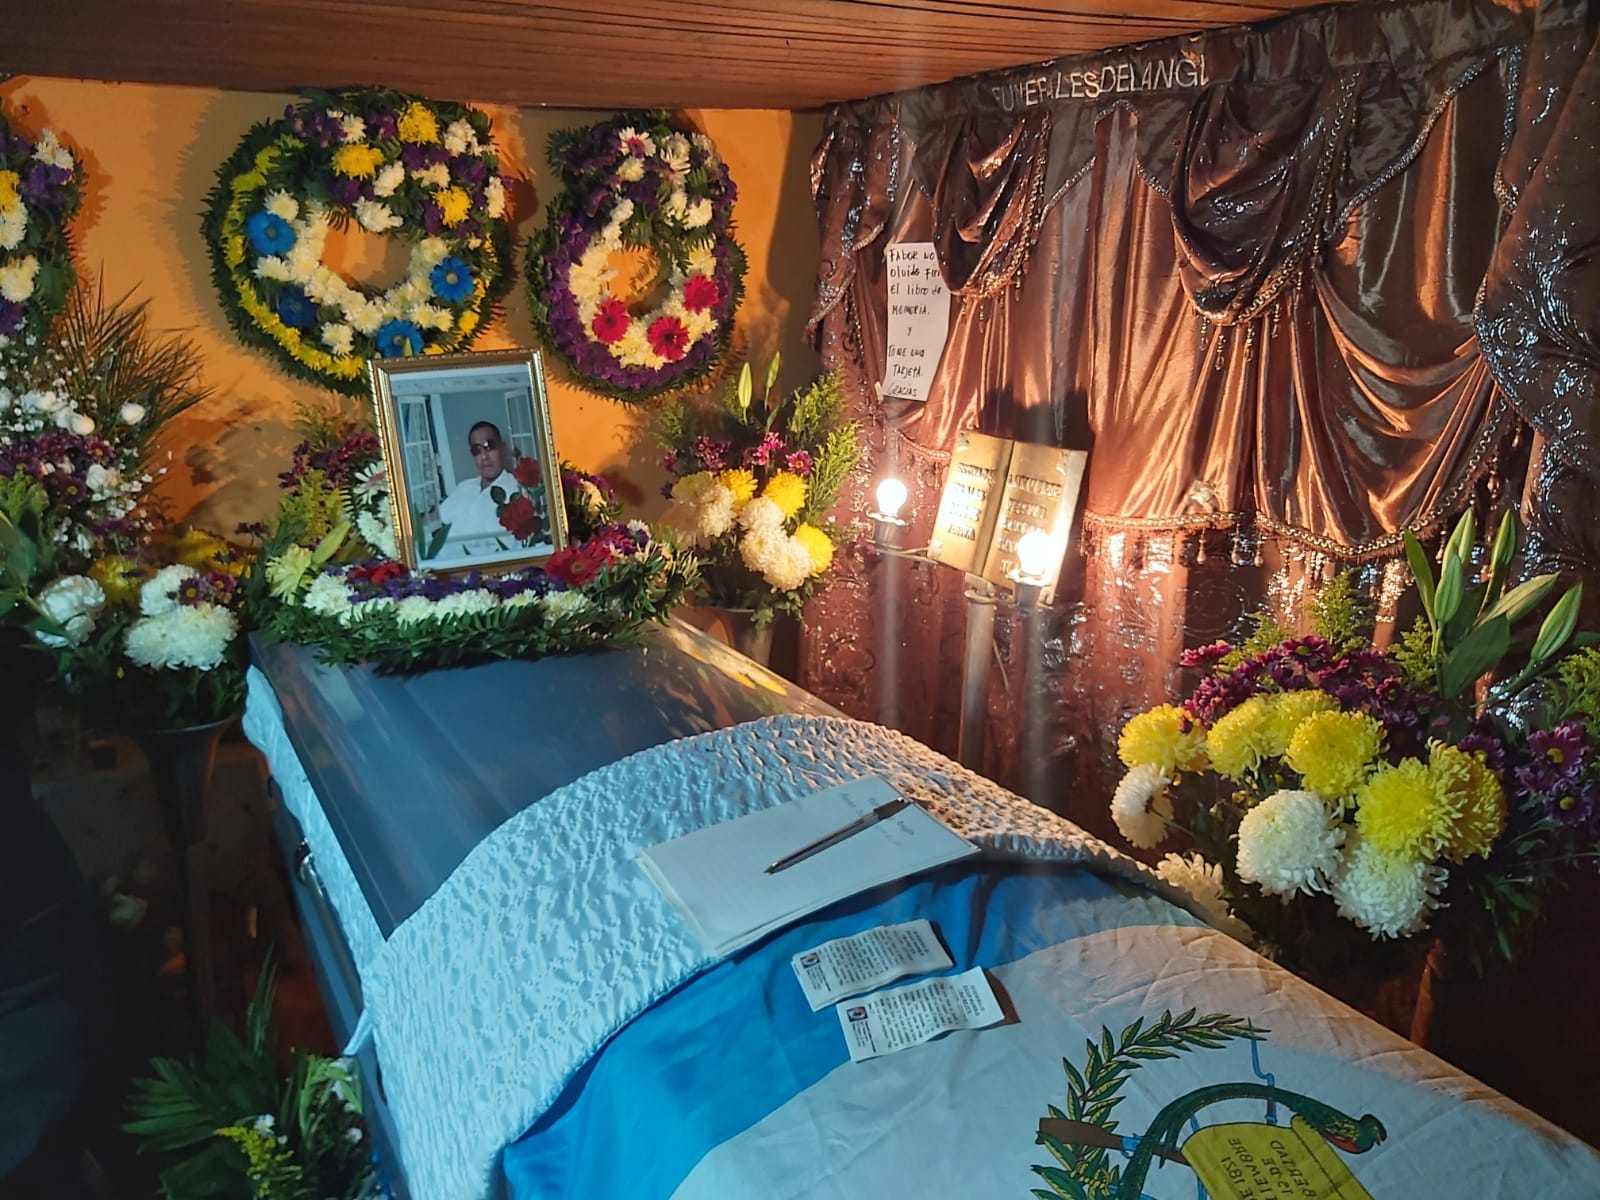 Cuerpo de quetzalteco fallecido en Estados Unidos, llega a su cantón de origen